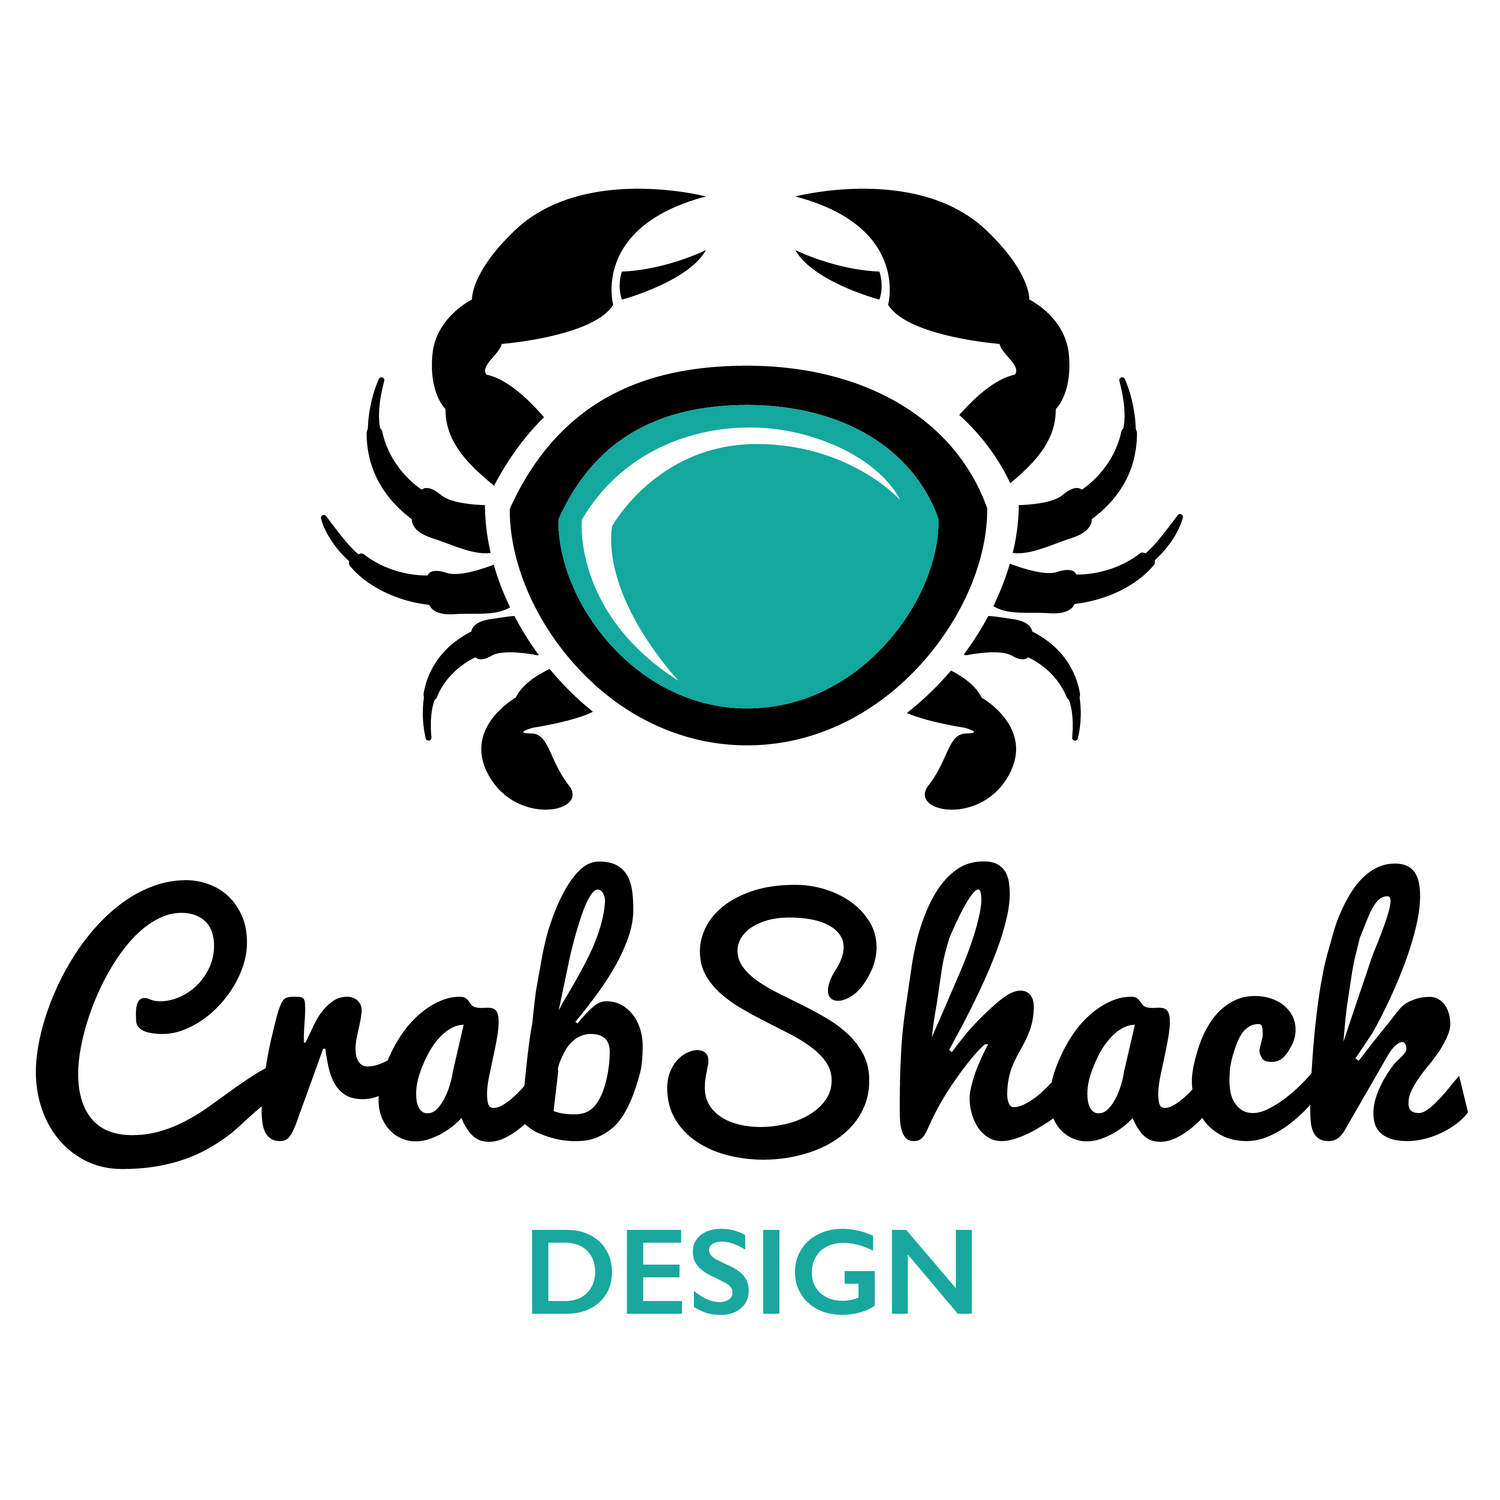 Crab Shack Design